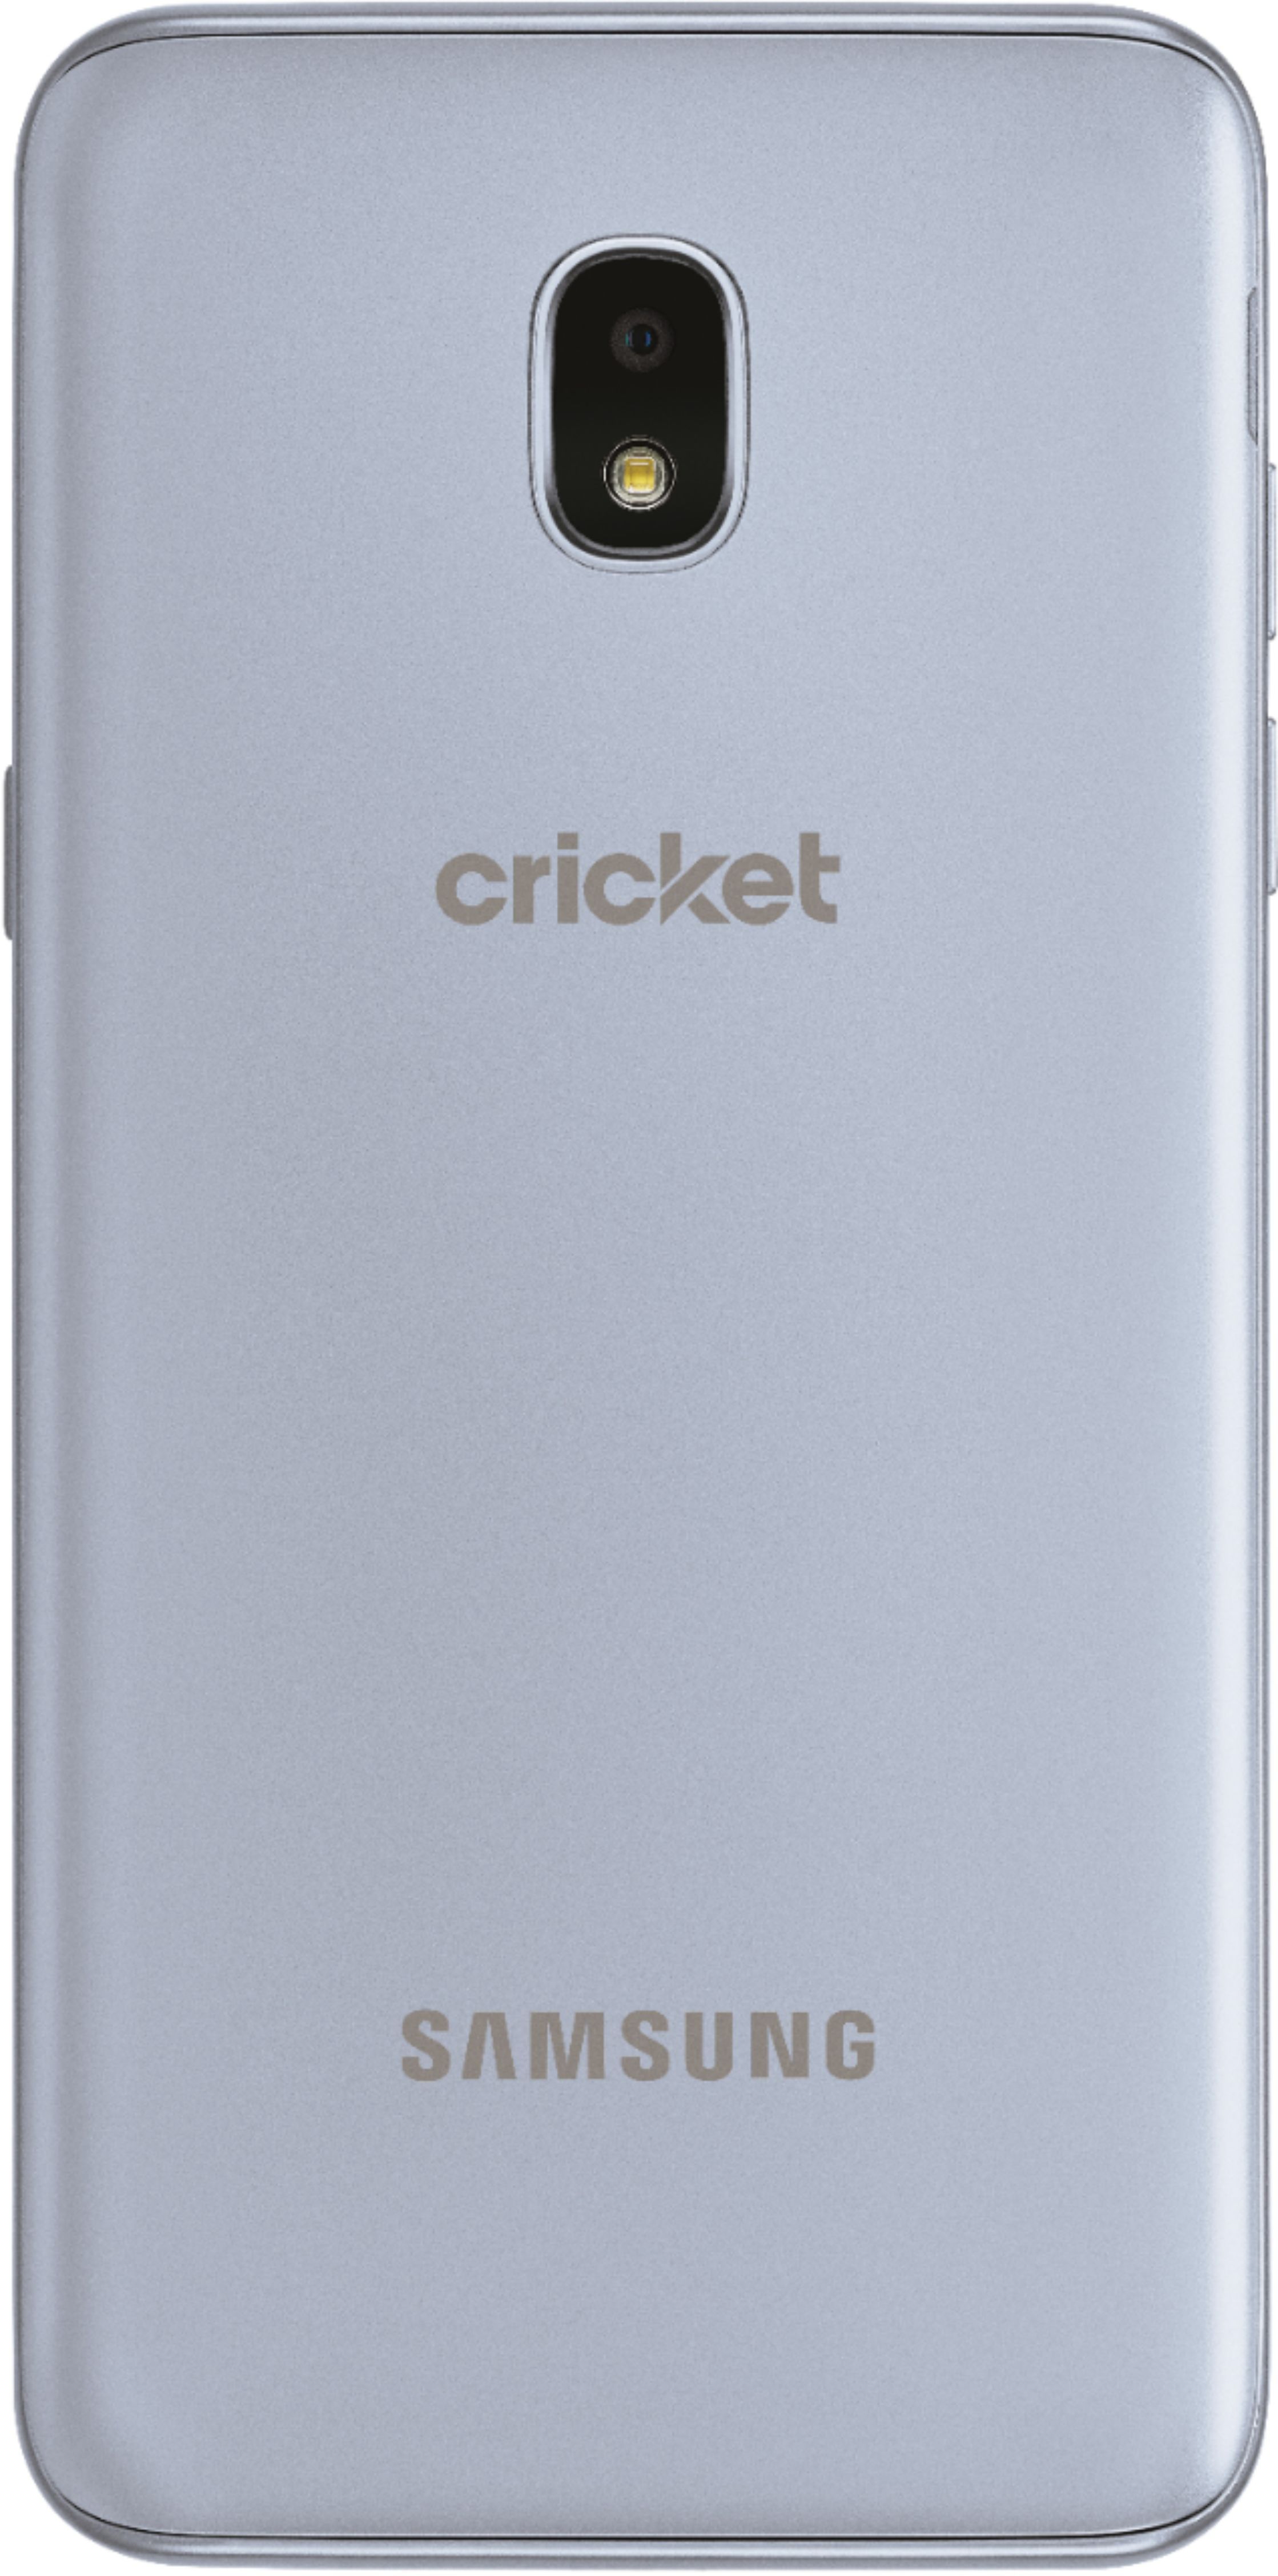 cricket phones prices